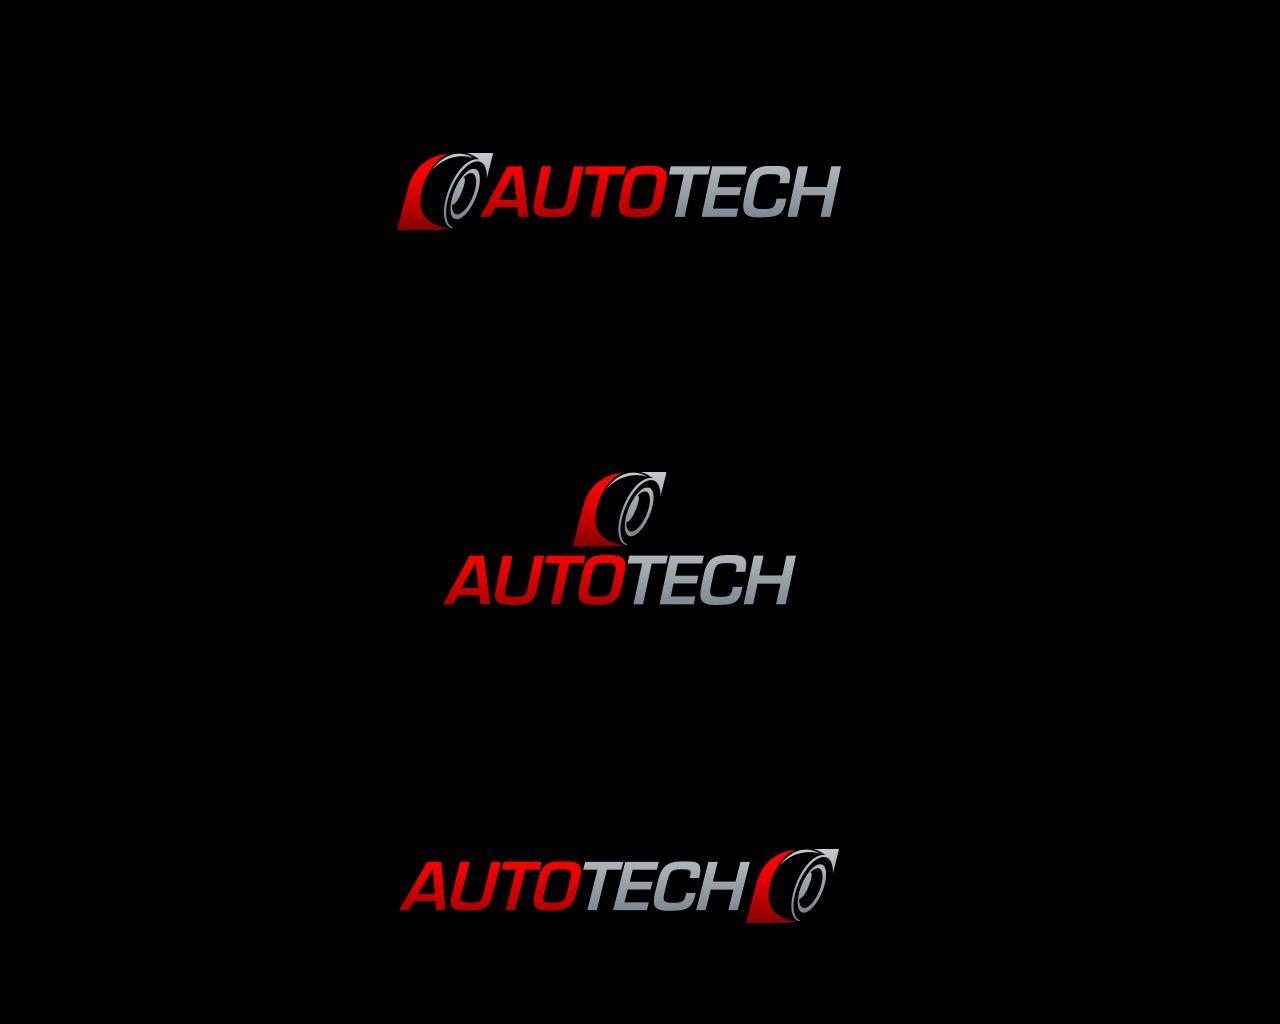 Automotive Tech Logo - Serious, Professional, Automotive Logo Design for AUTOTECH